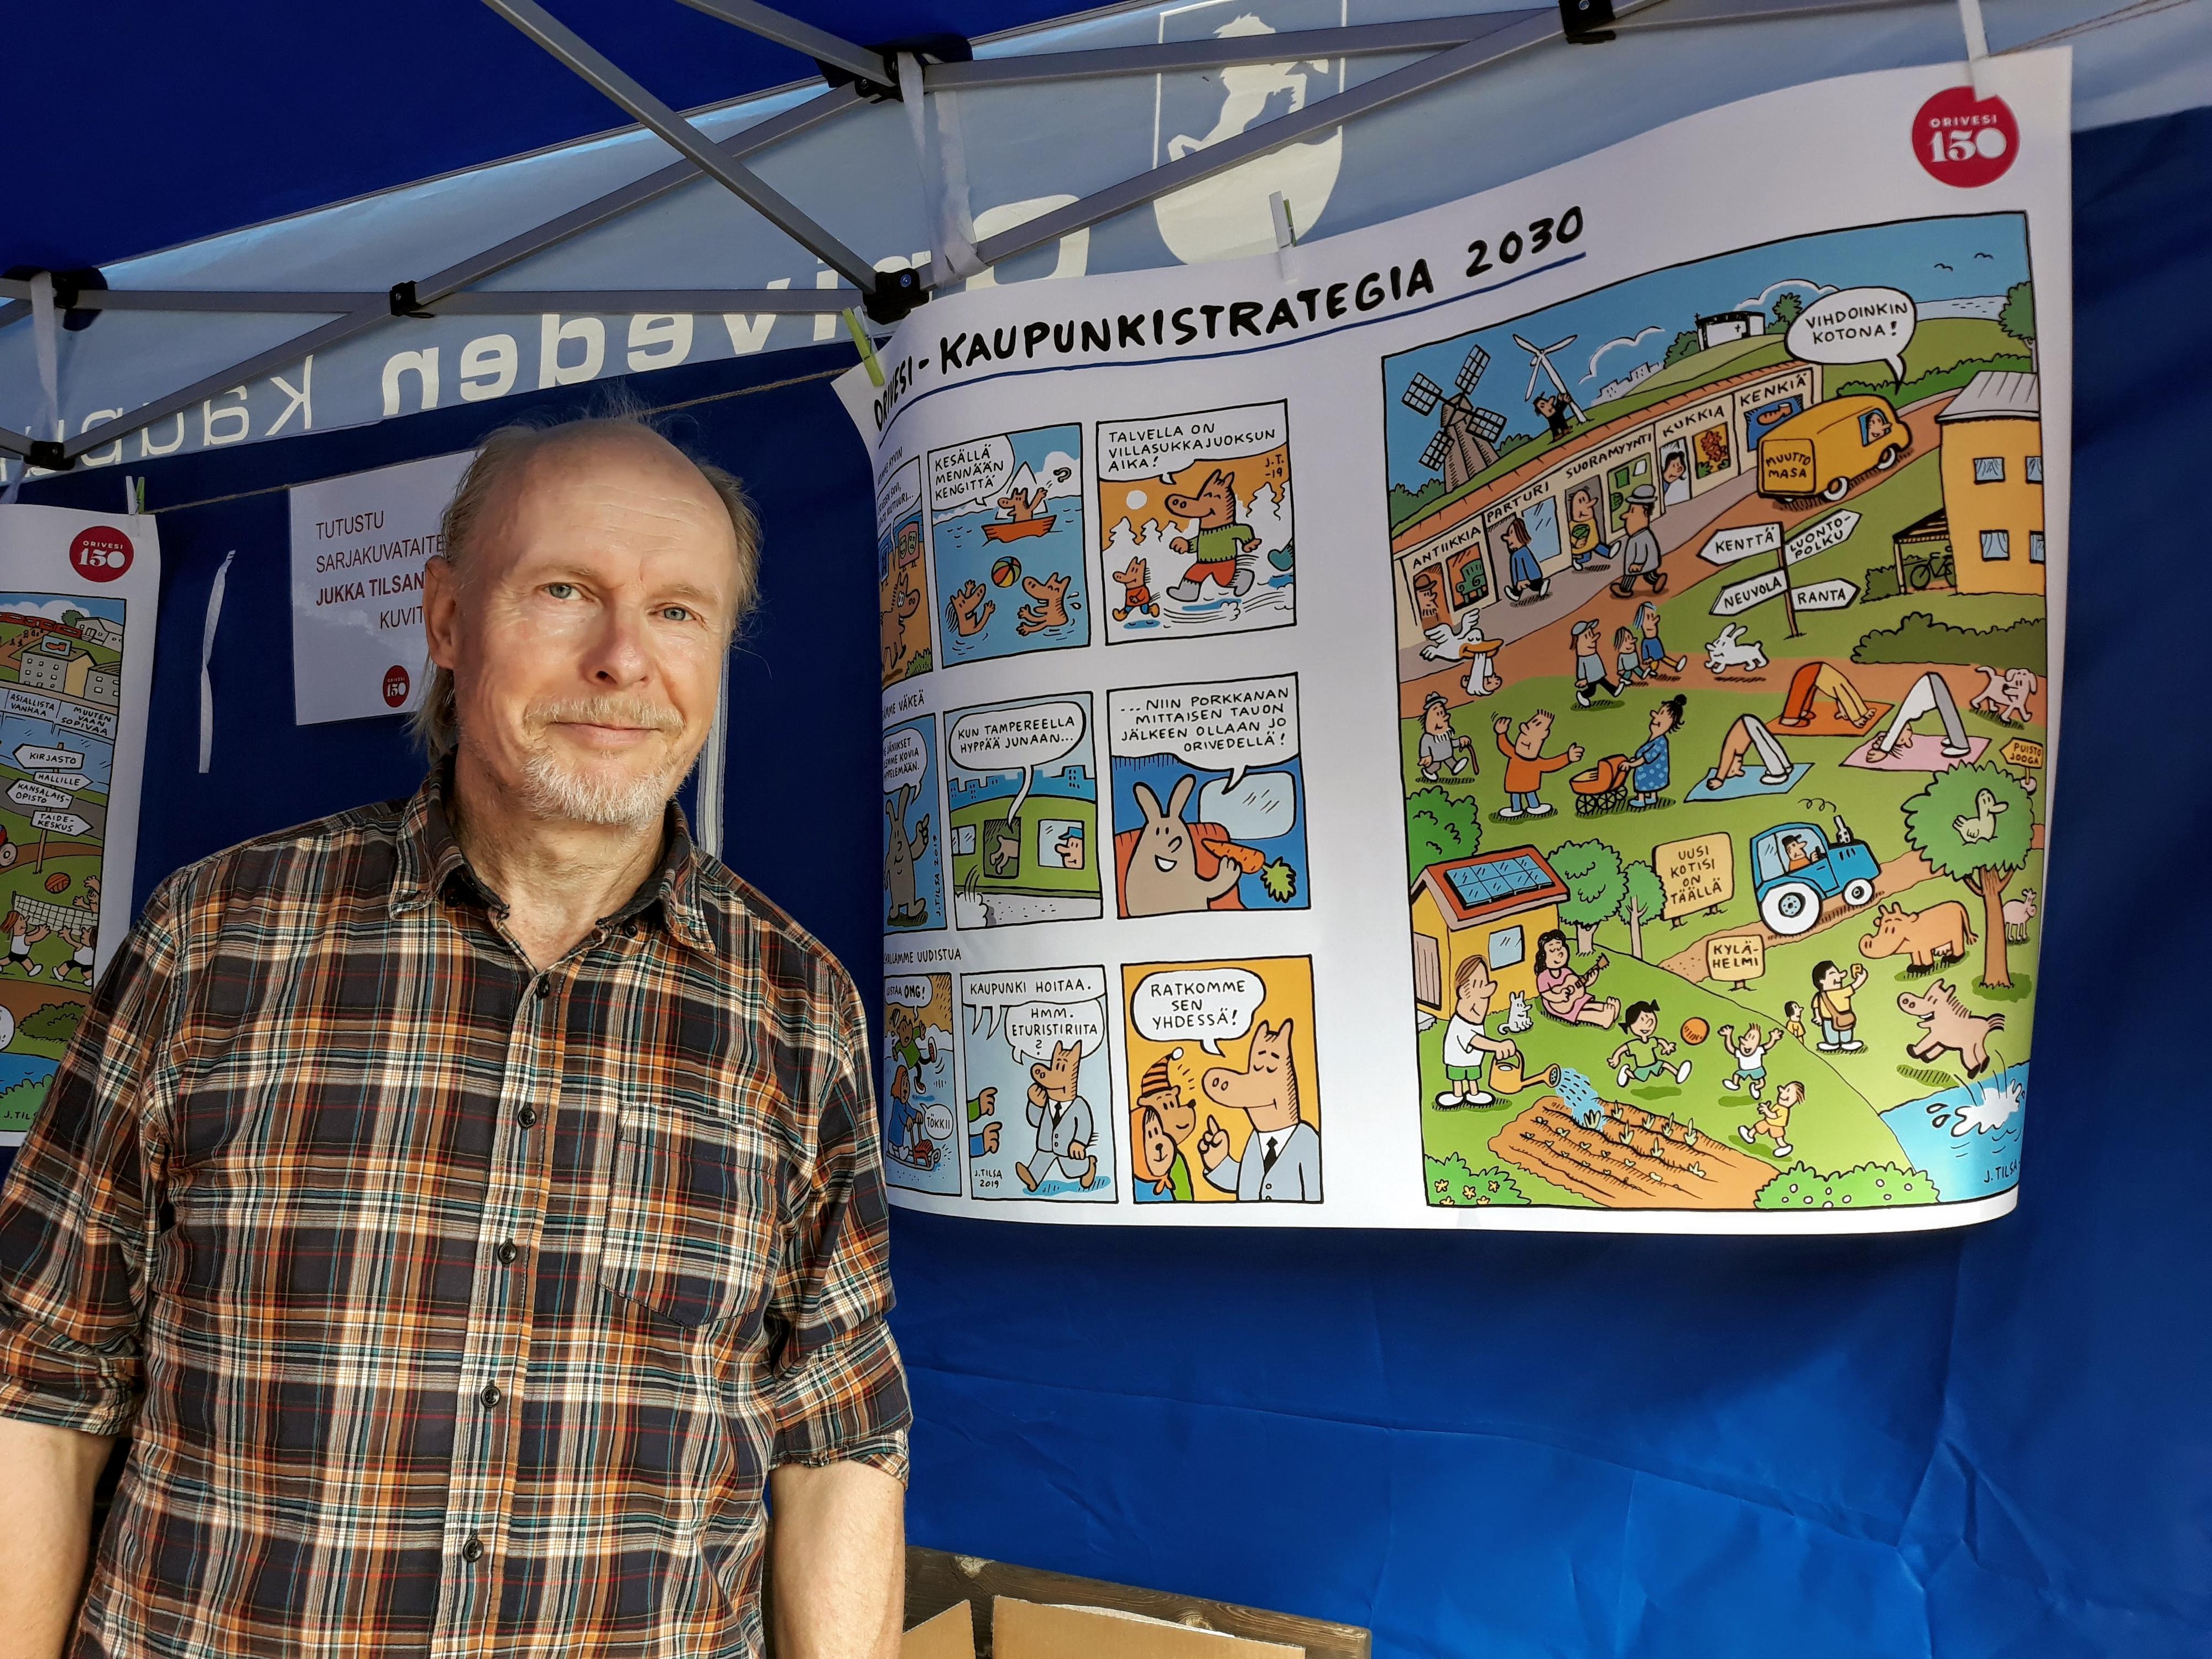 Sarjakuvataiteilija Jukka Tilsa piirtämänsä kaupunkistrategian sarjakuvakuvituksen vieressä.